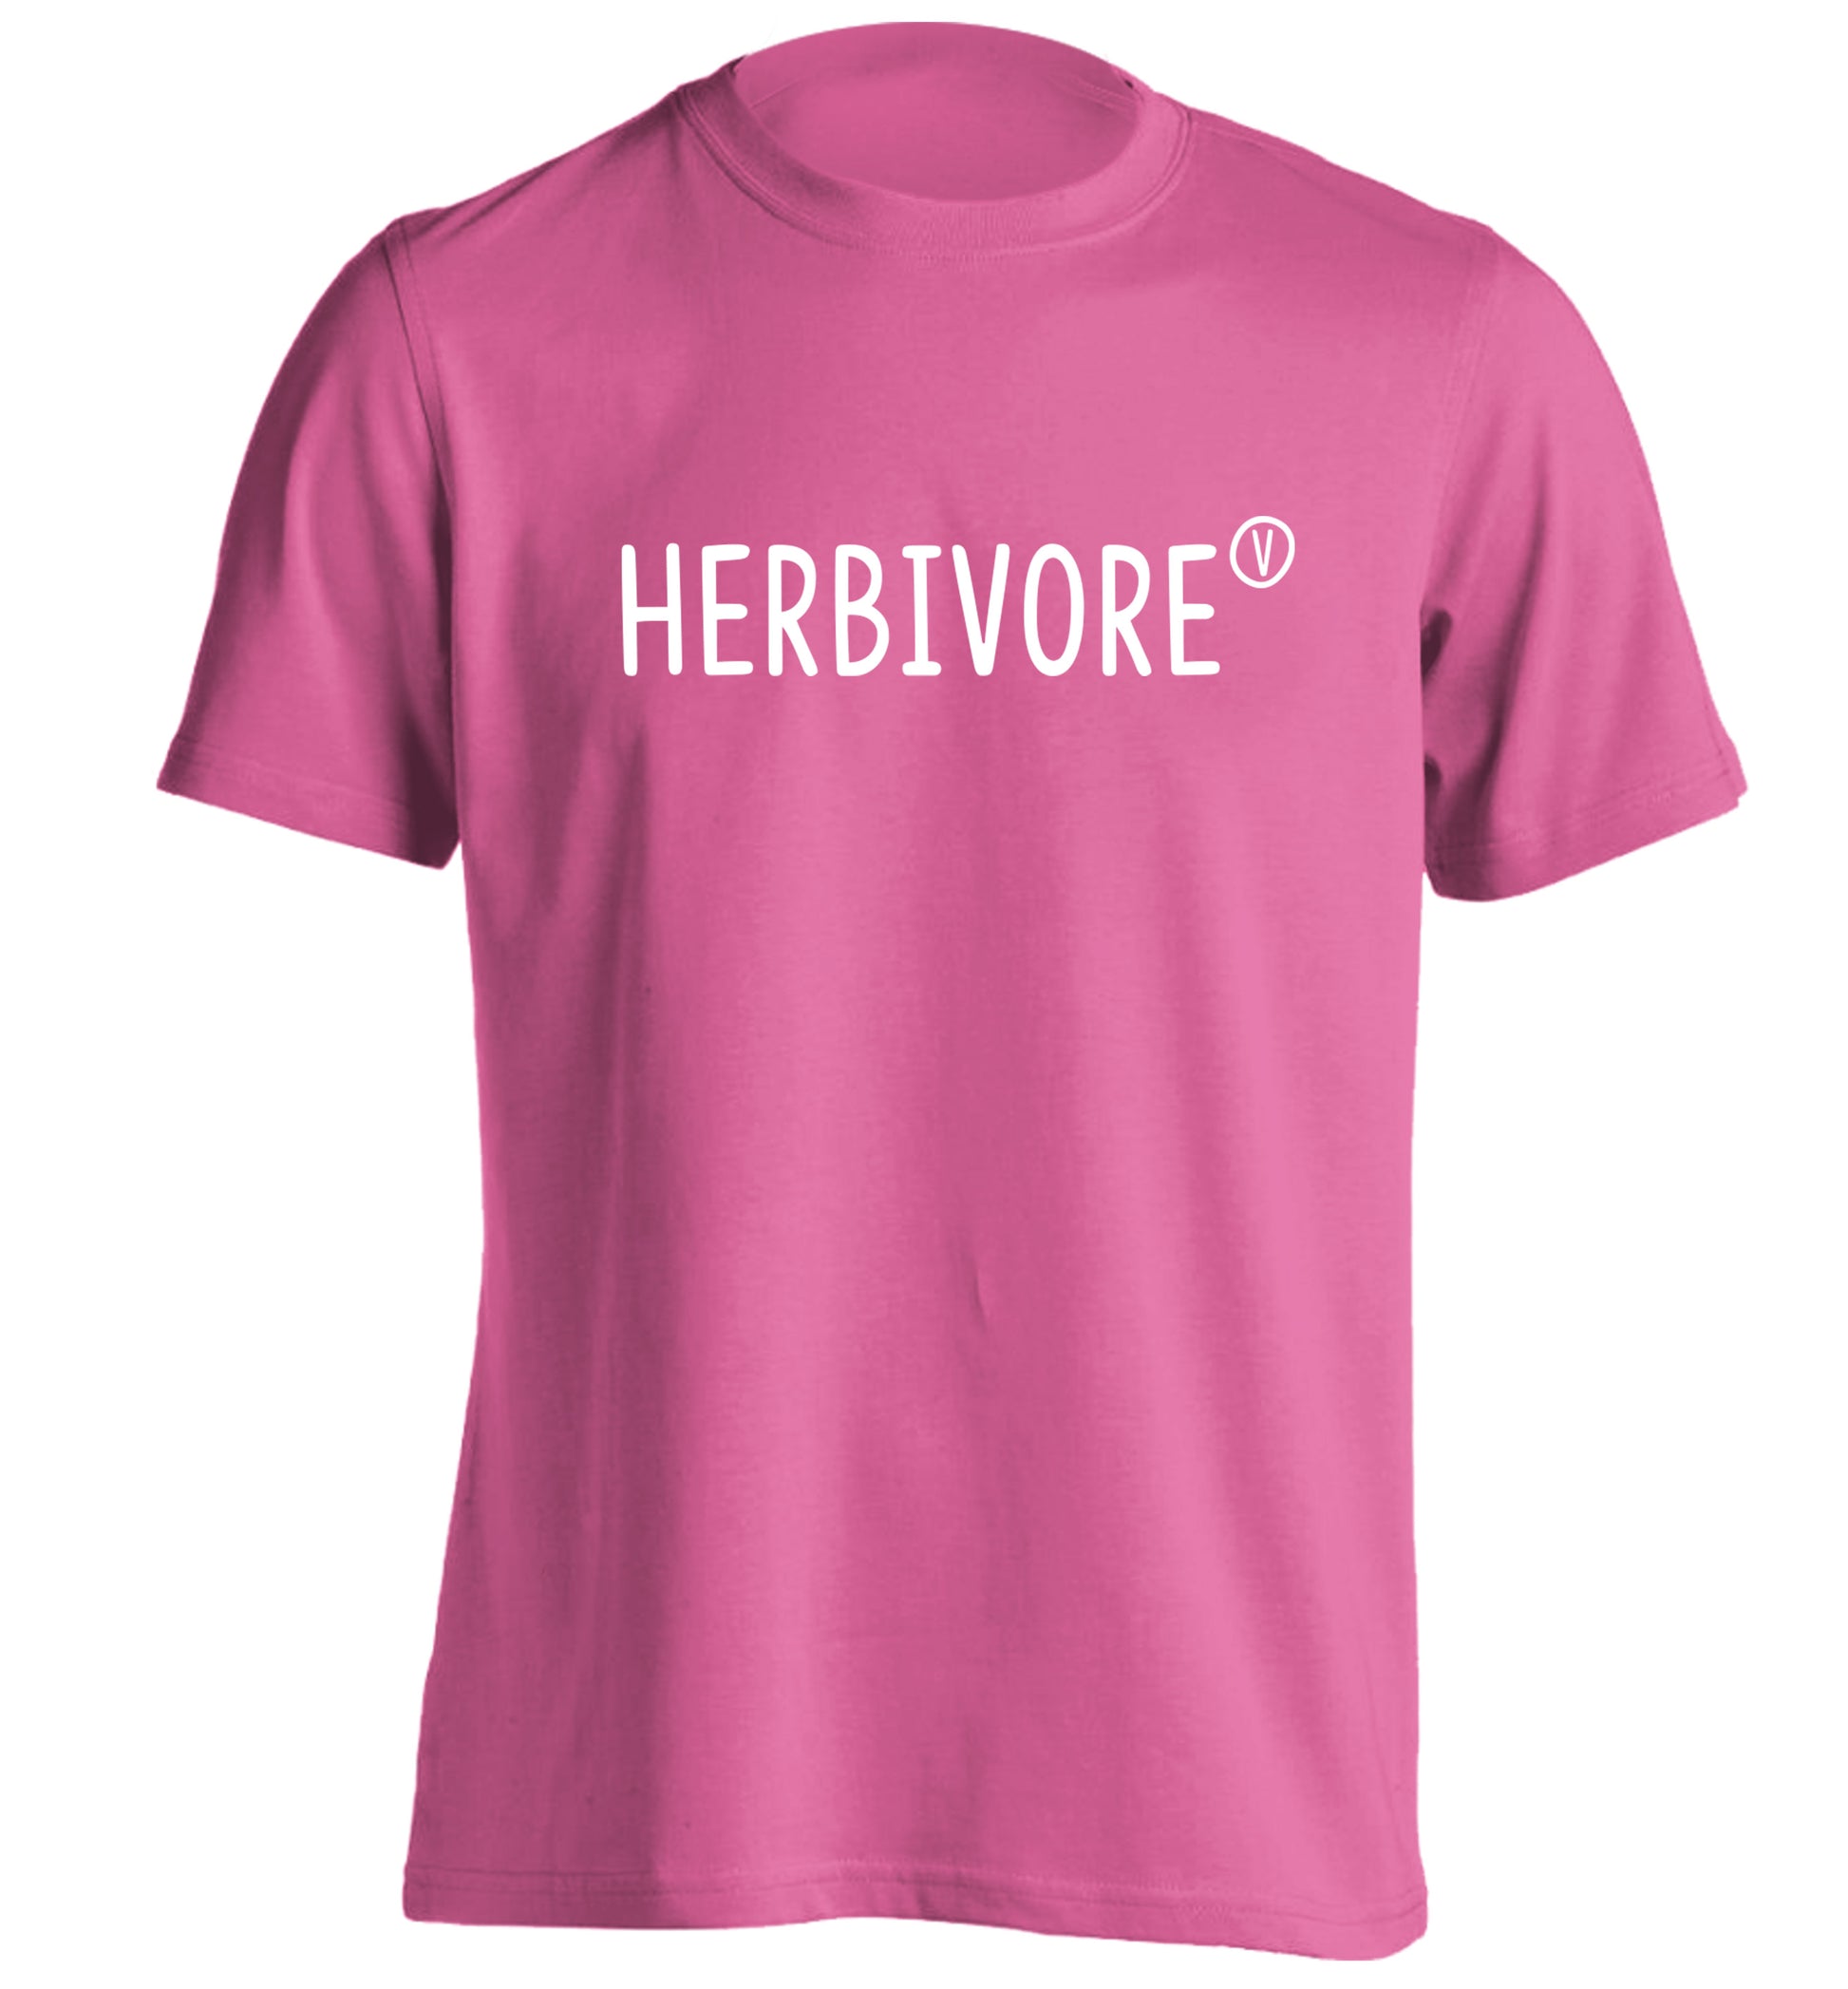 Herbivore adults unisex pink Tshirt 2XL